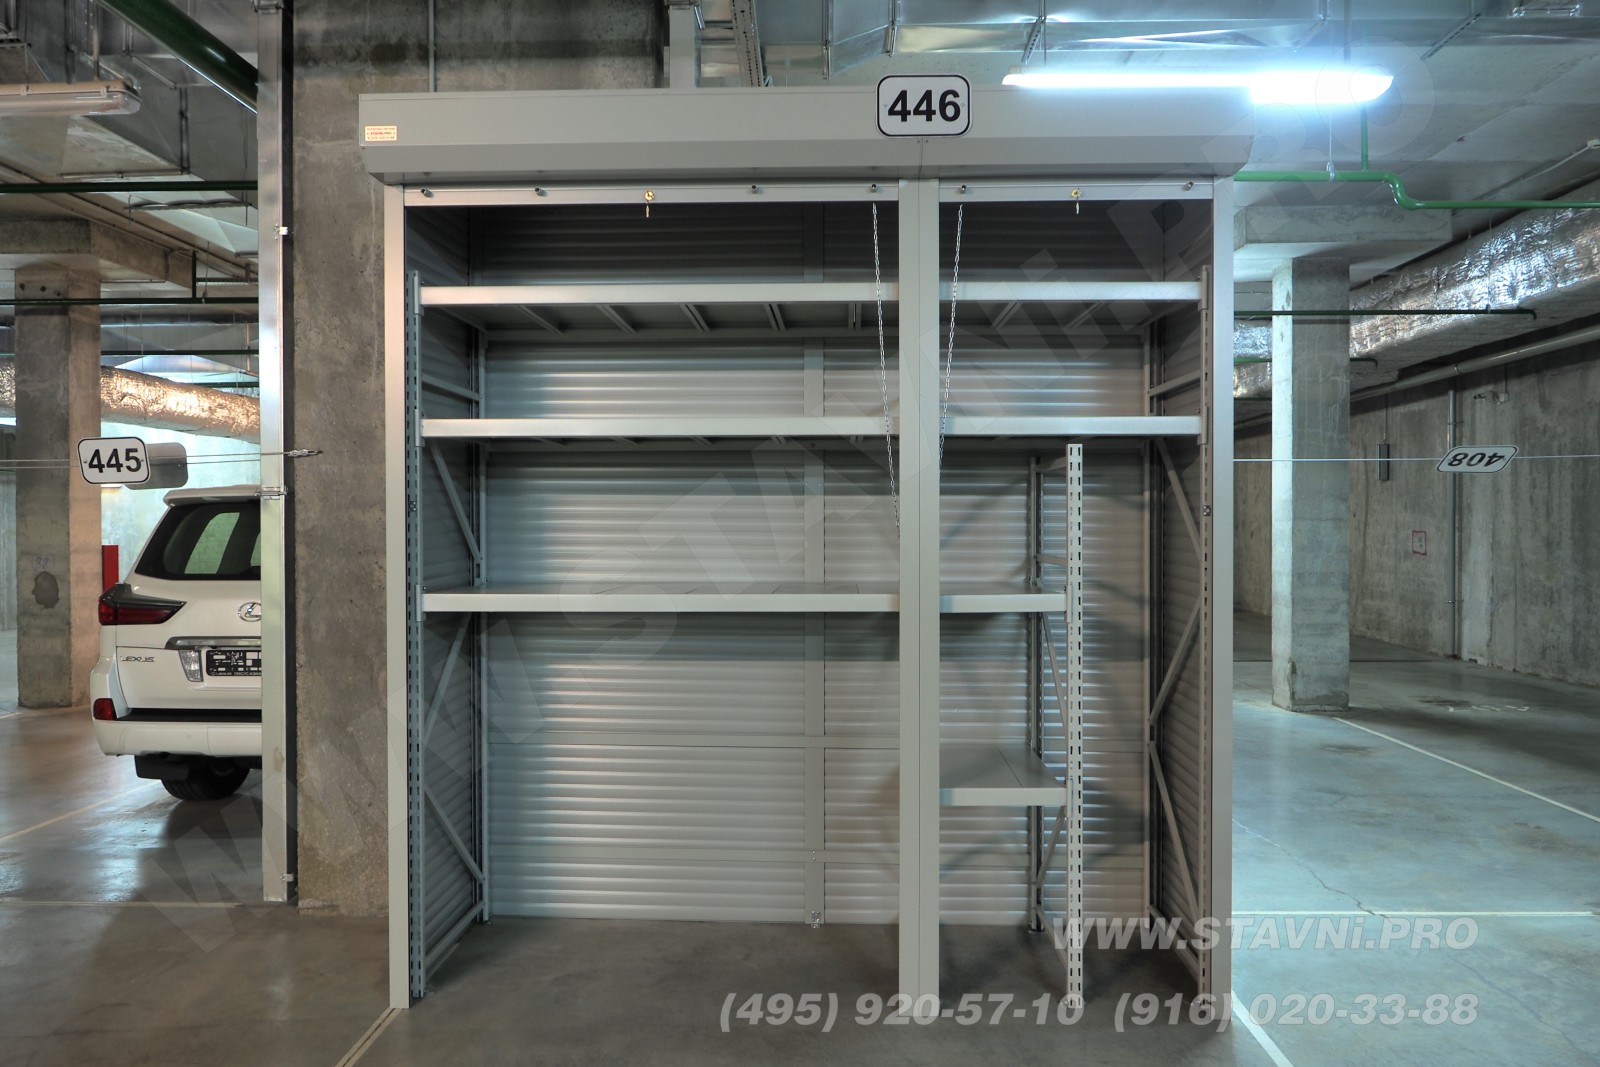 Эскиз - фронтальный вид на шкаф в общем зале парковки ЖК Скайфорт